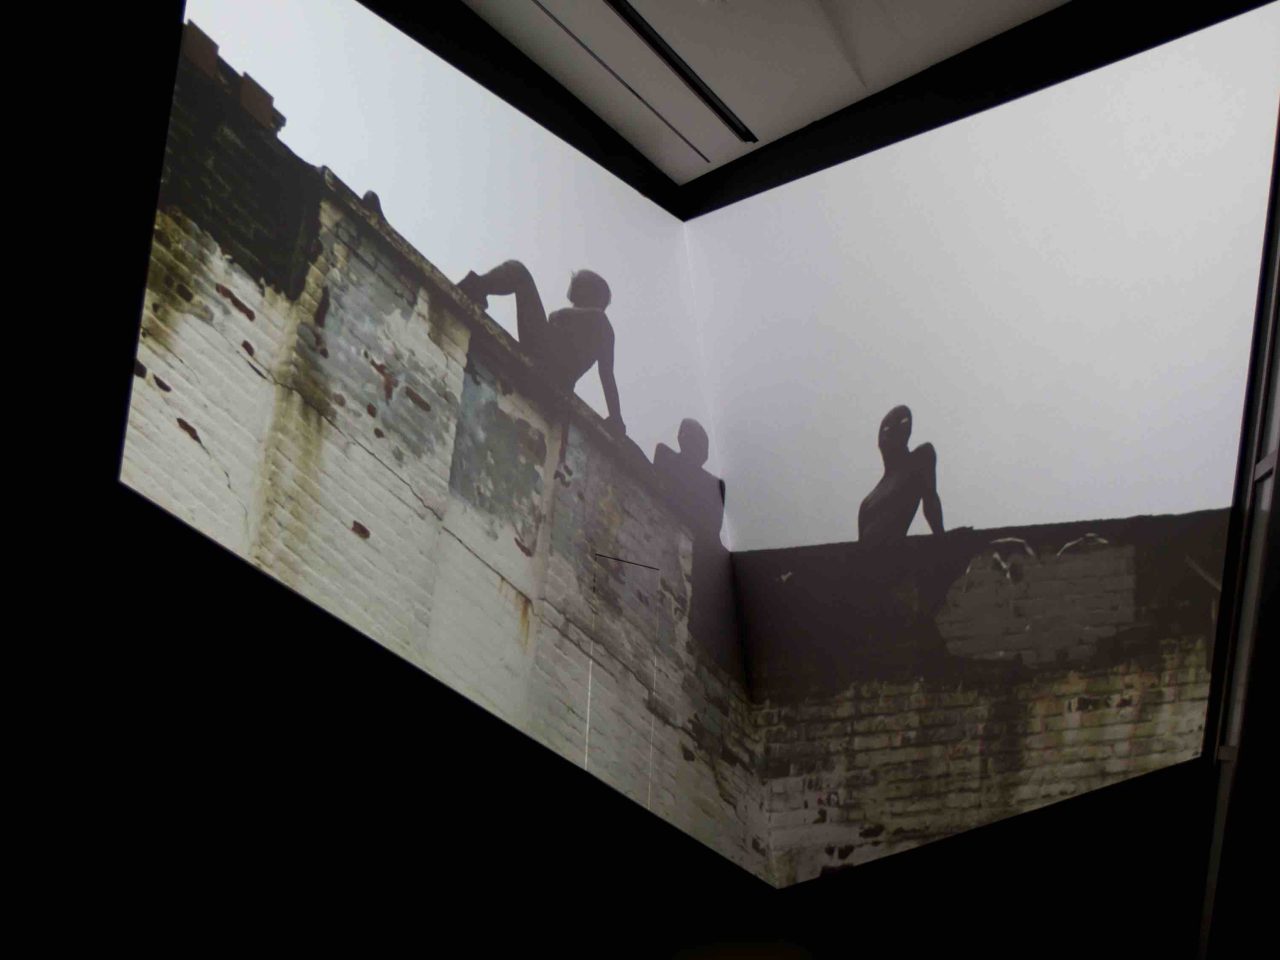 Michelle Handelman: Irma Vep, the last breath installation view